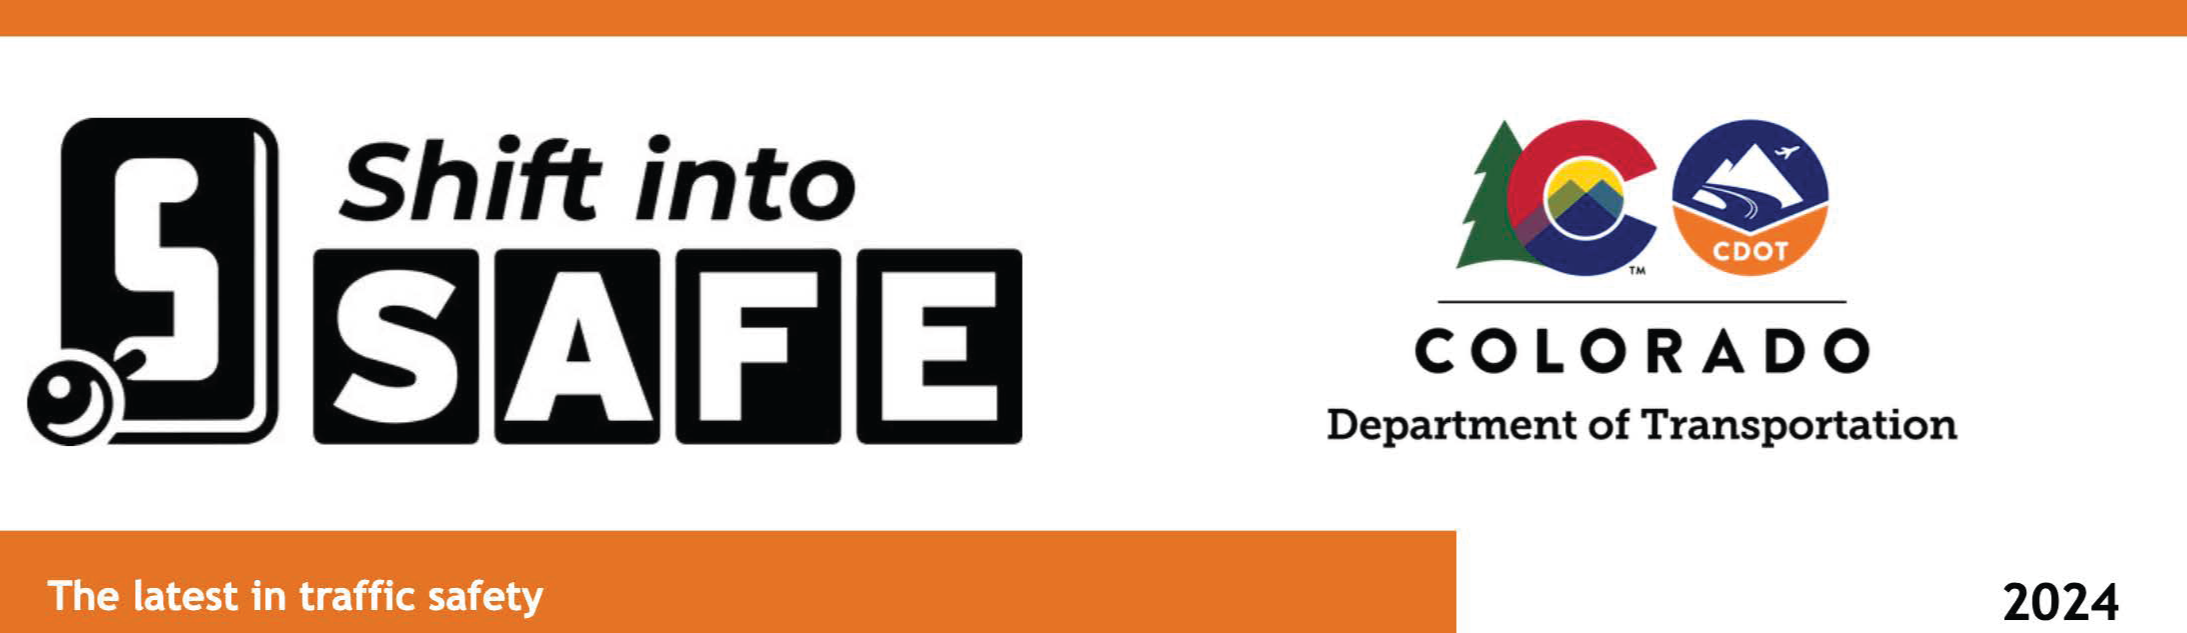 Shift into Safe News logo 2024 (edited).png detail image